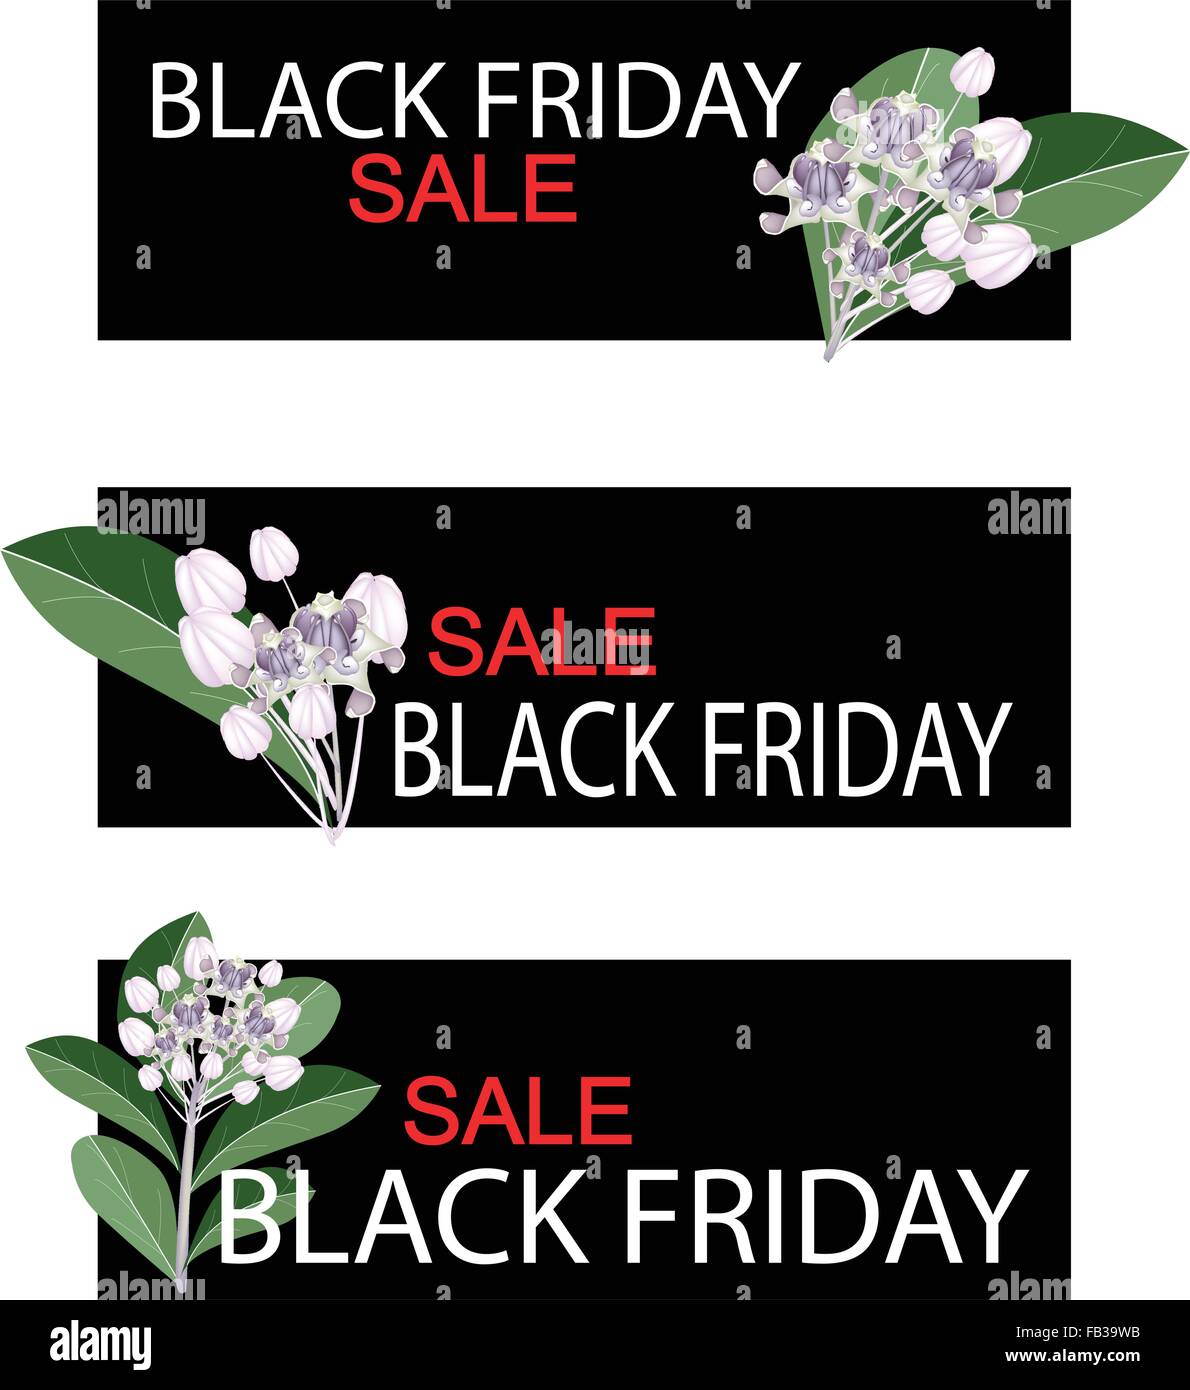 Illustration of Calotropis Gigantea Flowers or Crown Flowers on Black Friday Shopping Banner for Start Christmas Shopping Season Stock Vector